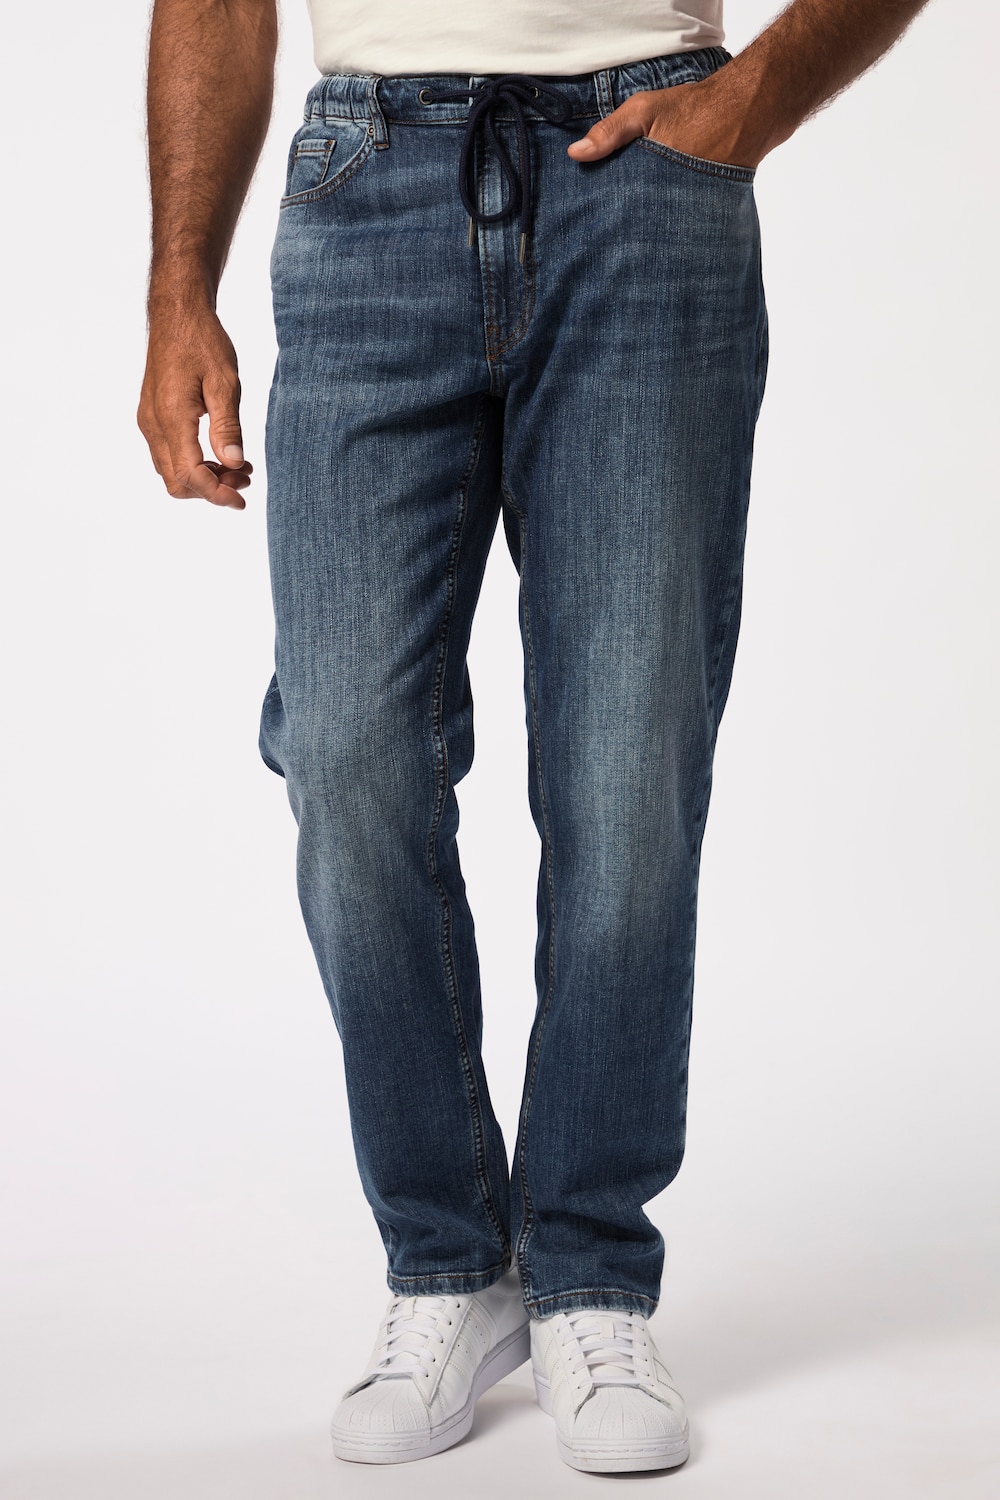 Grote Maten JP1880 Jeans, Heren, blauw, Maat: 8XL, Katoen/Polyester, JP1880